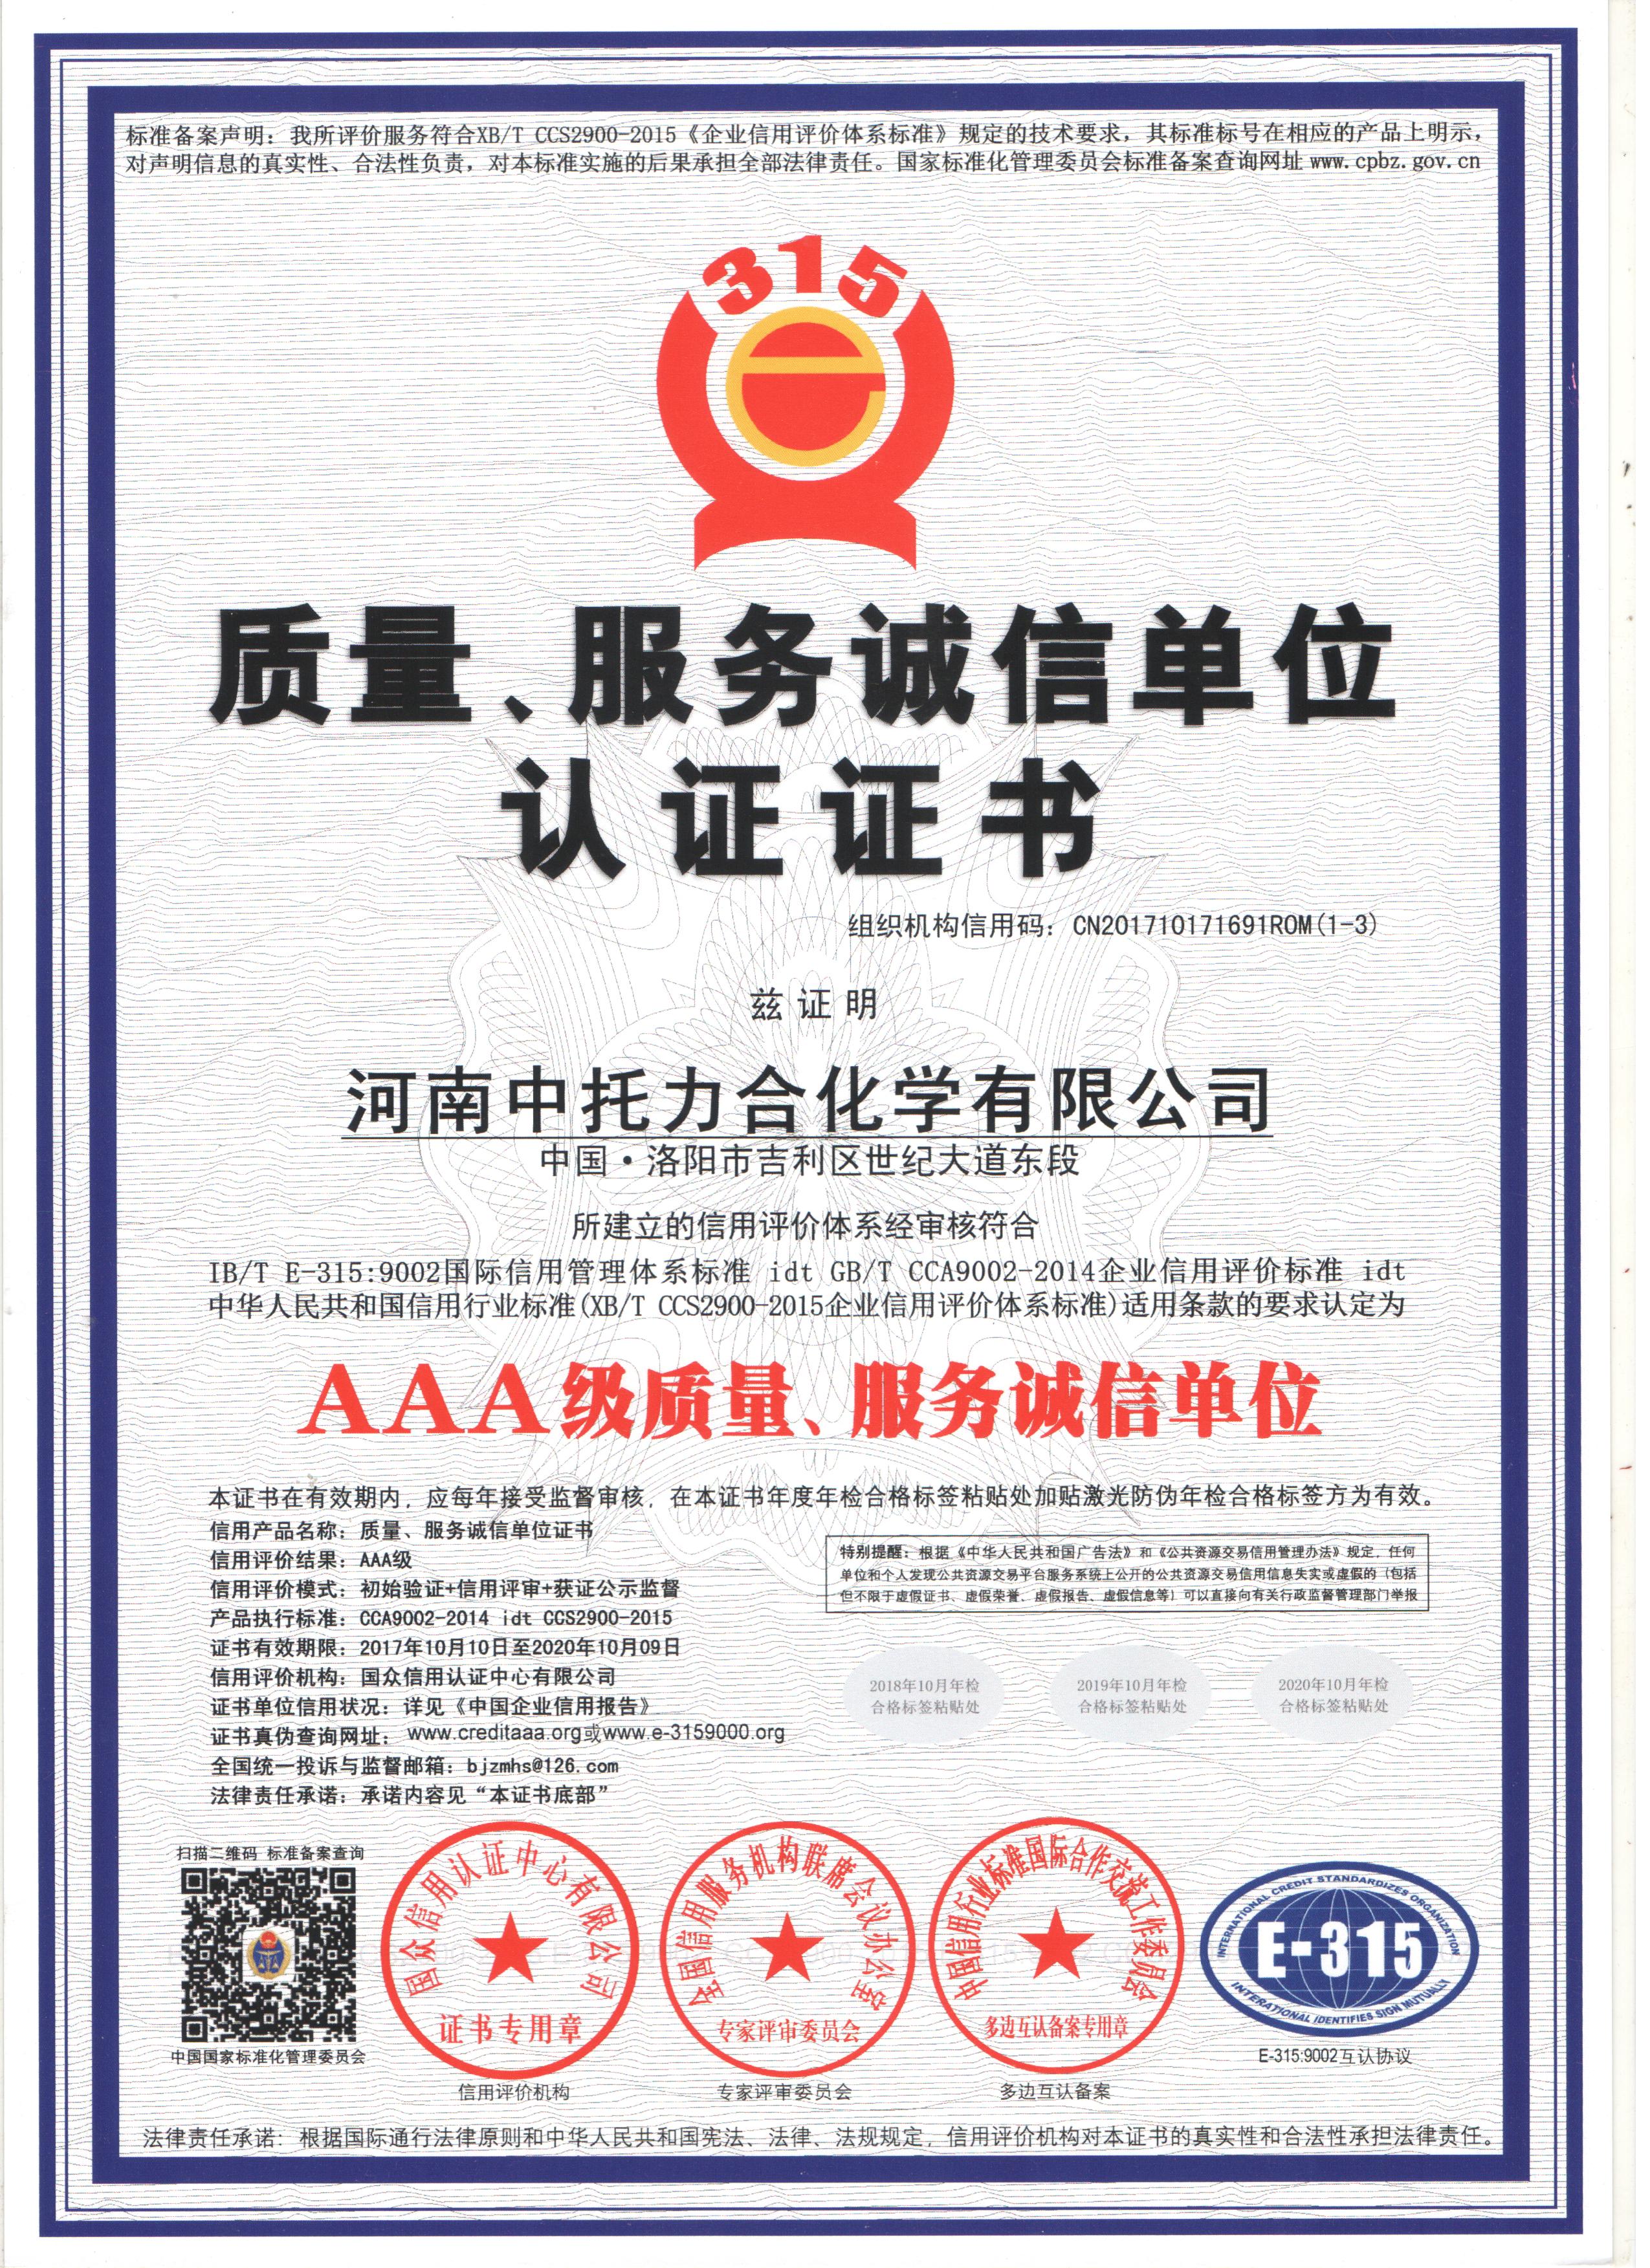 AAA质量服务诚信单位认证证书